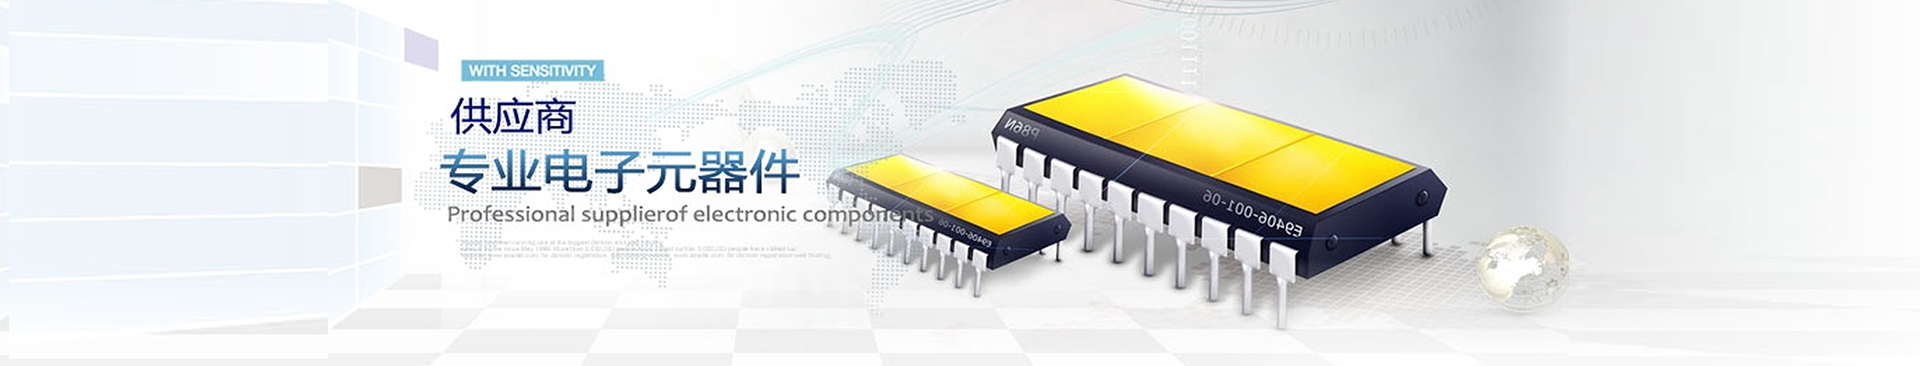 深圳市微电半导体有限公司,您身边的半导体专家!